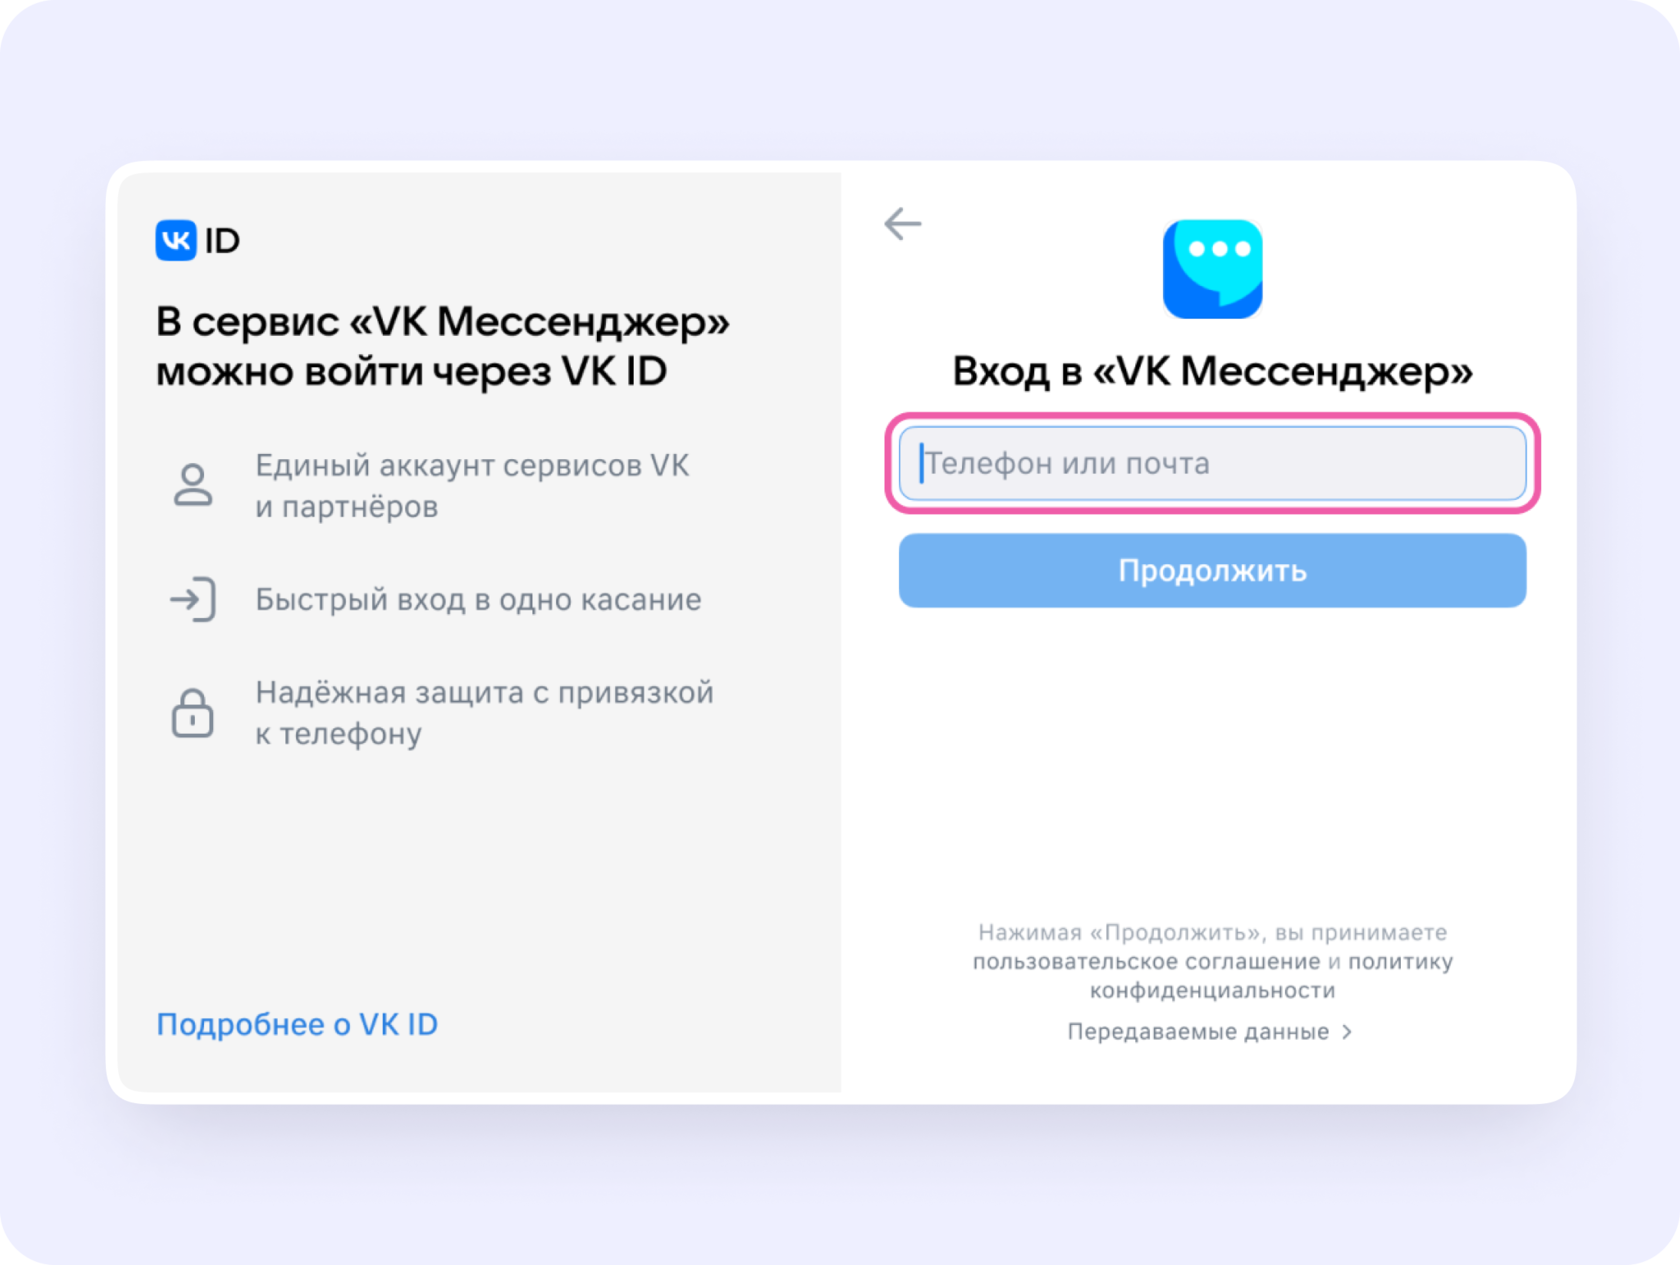 Включаем и настраиваем смс оповещение из социальной сети Вконтакте